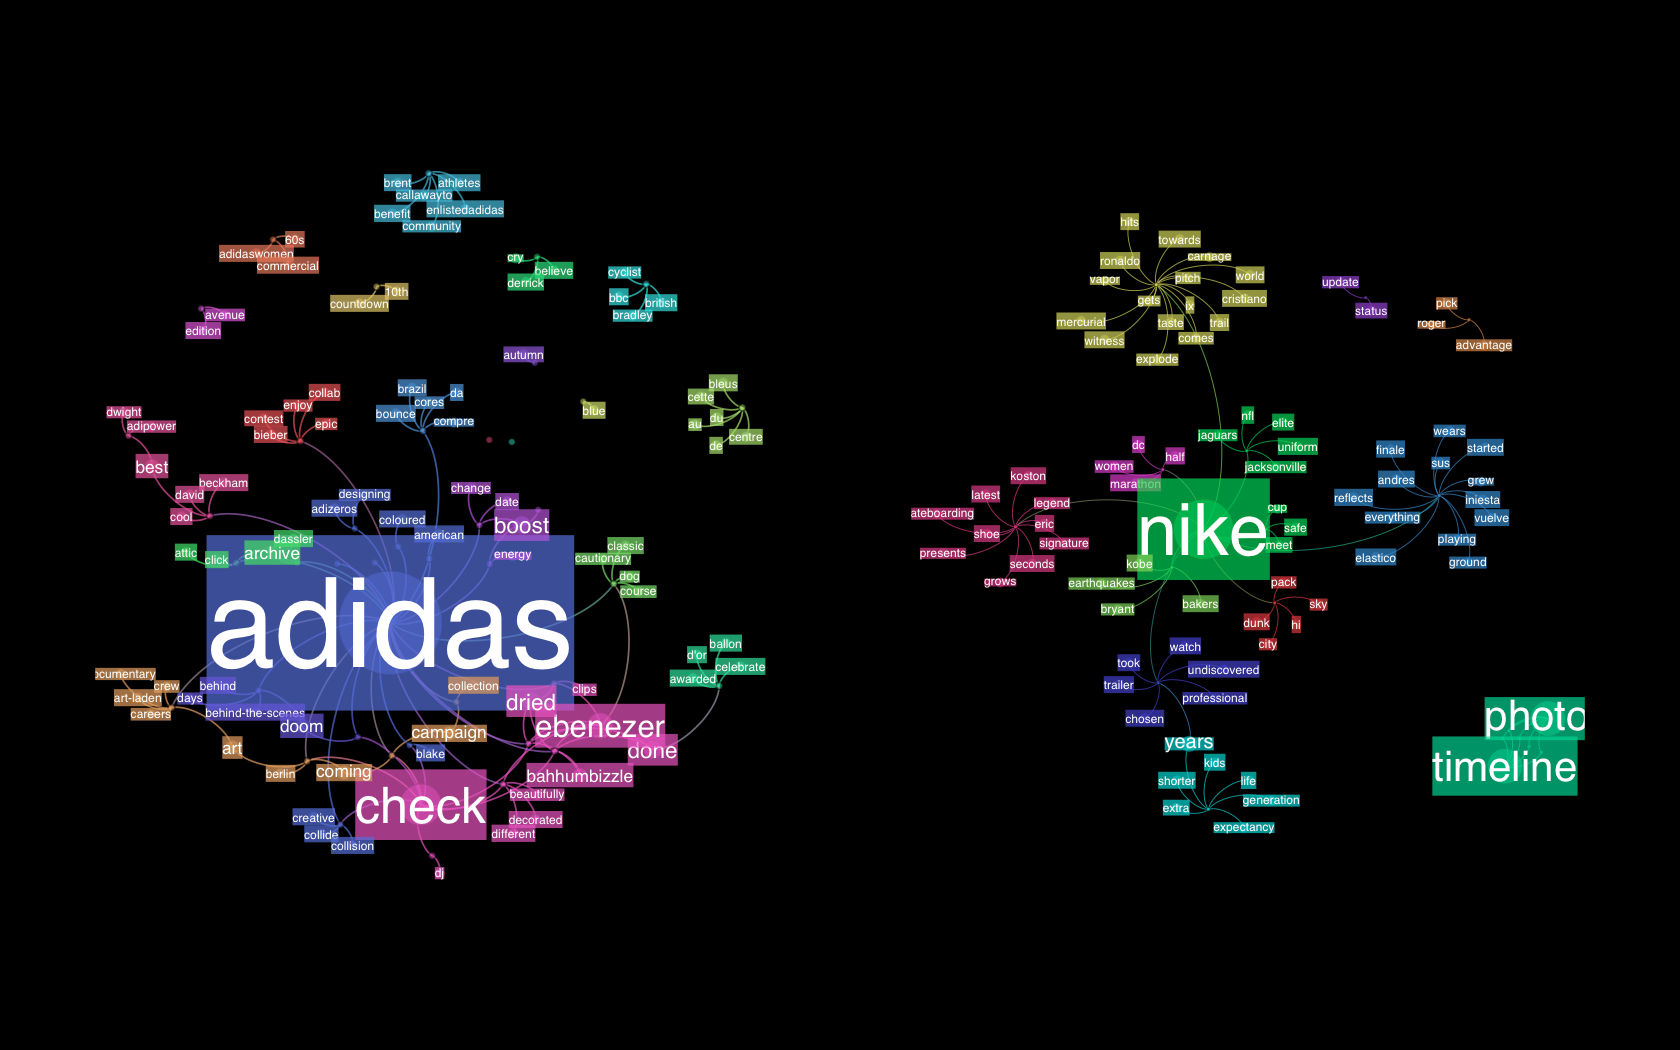 Nike vs Adidas Networks